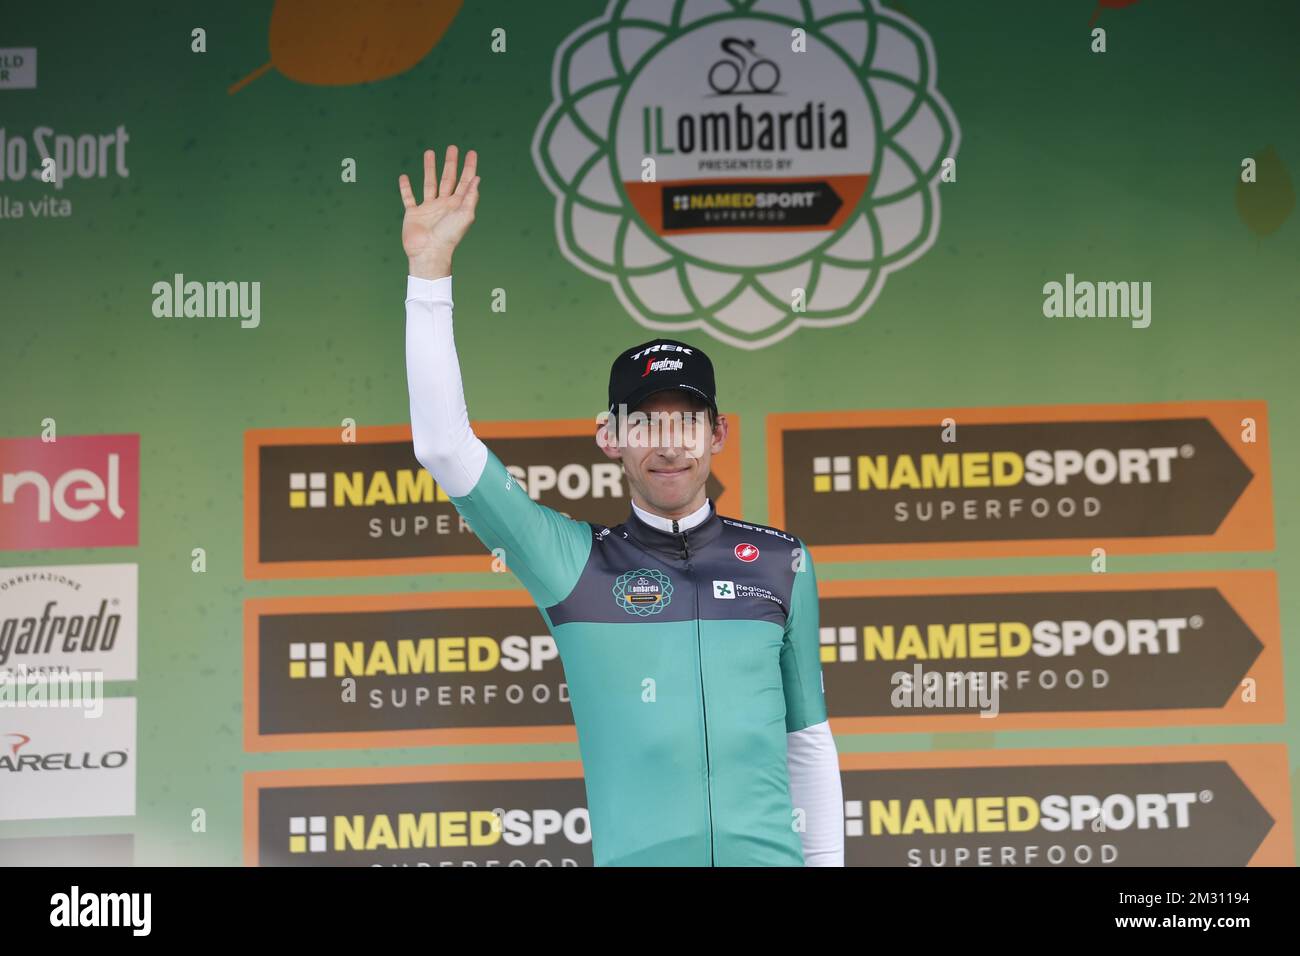 Le Dutch Bauke Mollema de Trek-Segafredo célèbre sur le podium avec un maillot spécial en hommage à Felice Gimondi après avoir remporté la course de vélo d'une journée Giro di Lombardia, samedi 12 octobre 2019 à Côme, Italie. BELGA PHOTO YUZURU SUNADA FRANCE OUT Banque D'Images